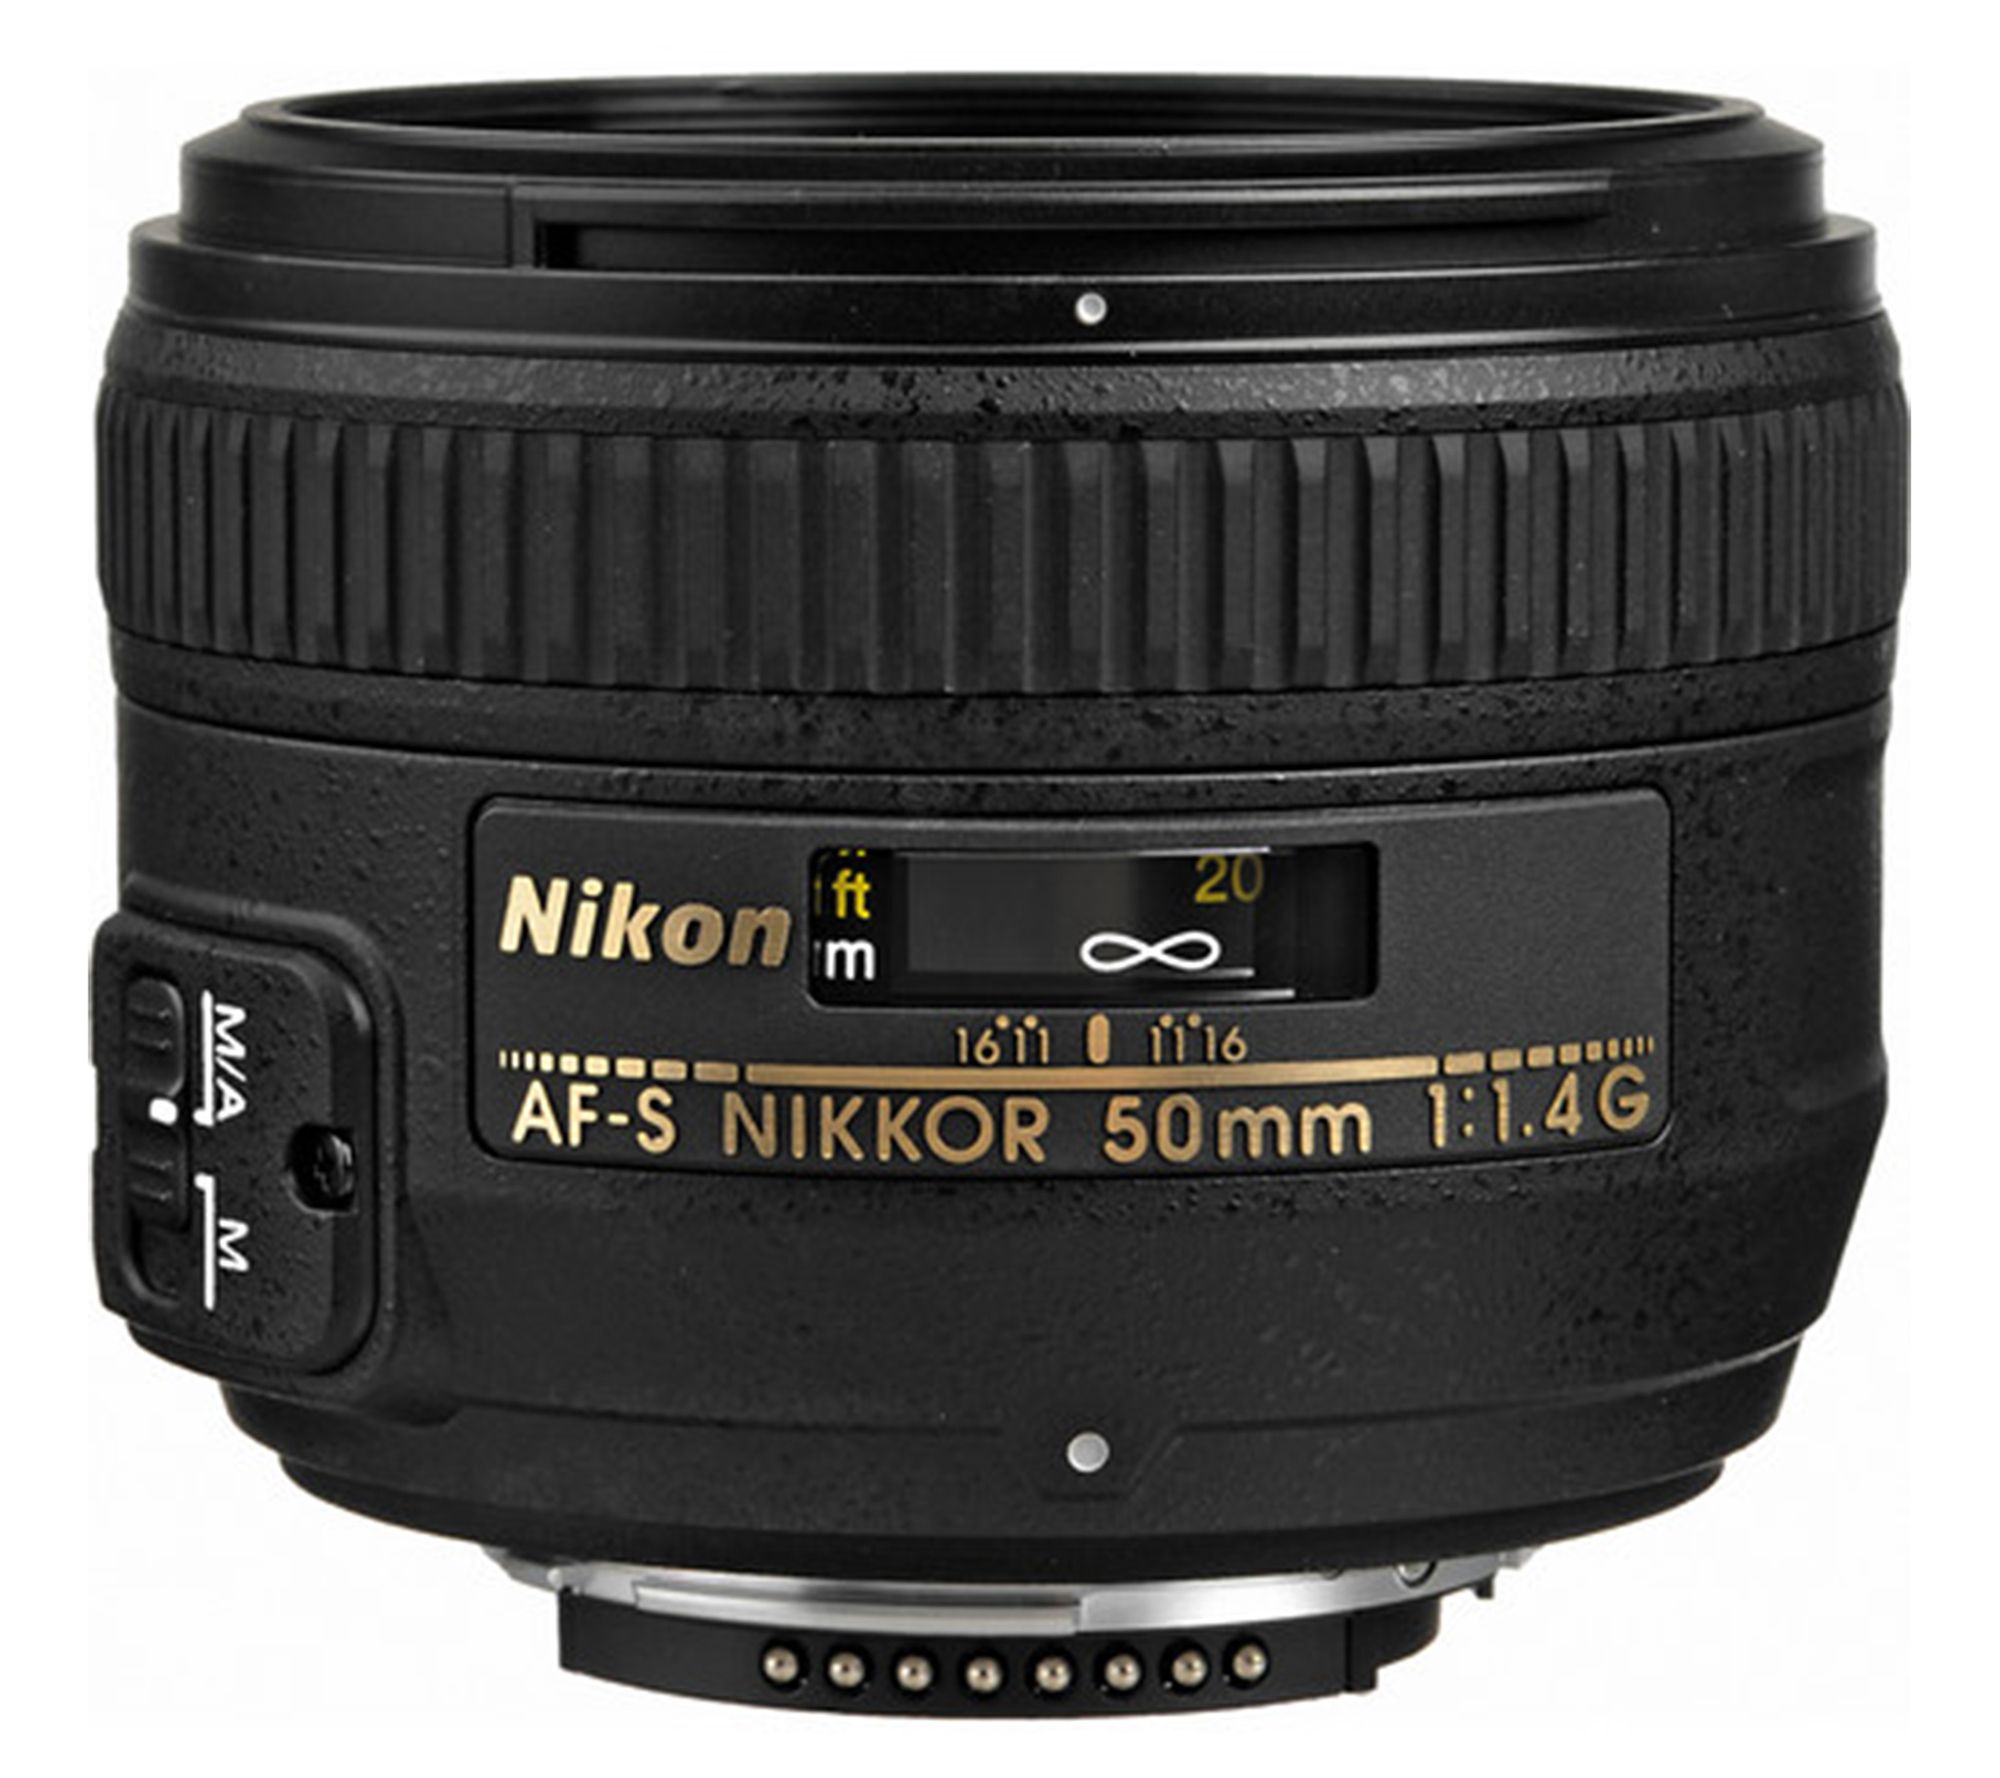 ニコン AF-S NIKKOR 50mm f/1.4Gレンズ(単焦点) - レンズ(単焦点)